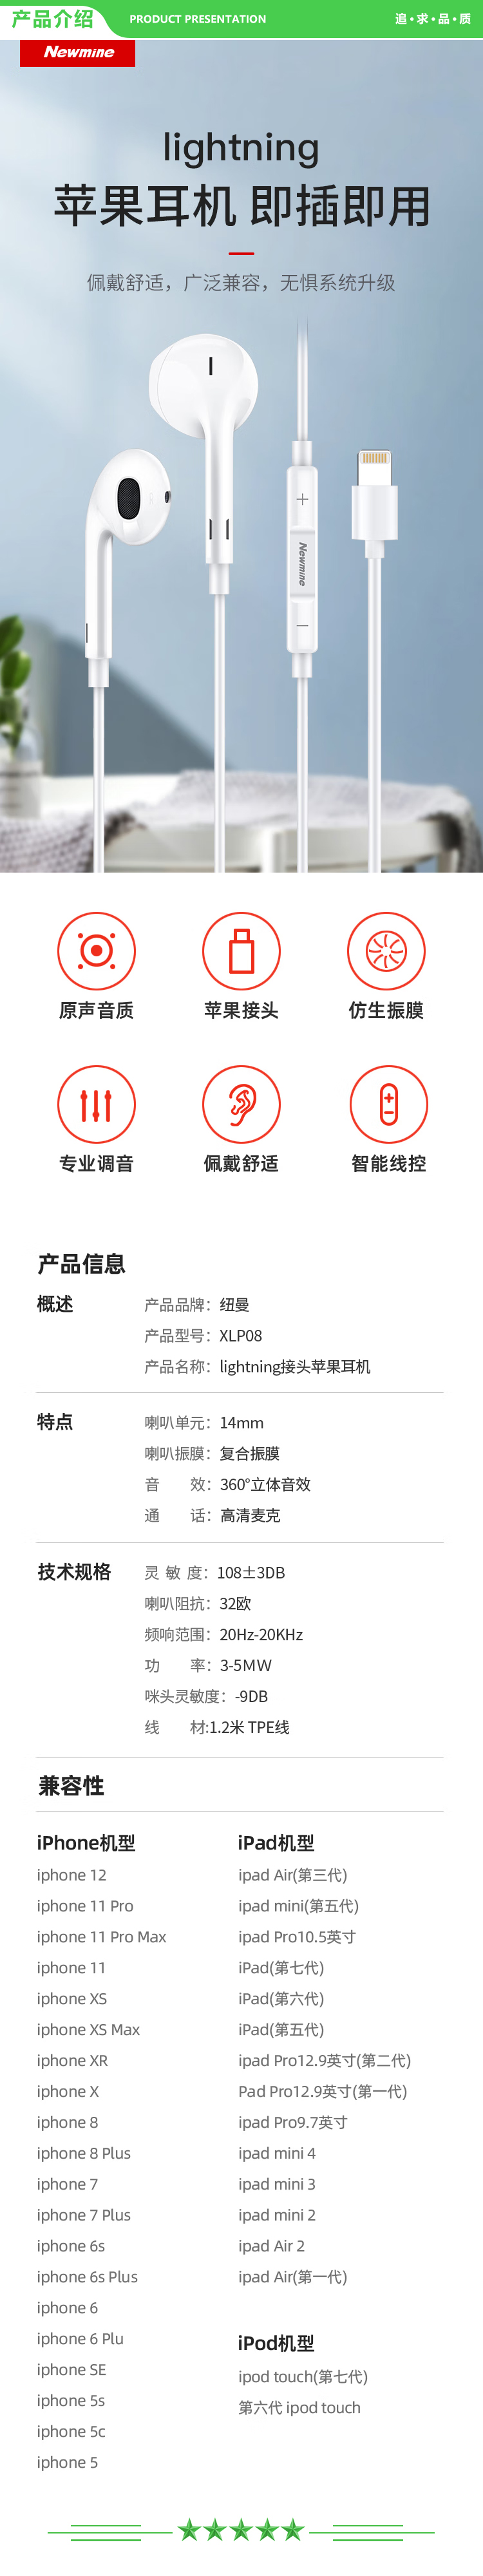 纽曼 Newmine XLP08升级版 手机耳机Lightning闪电接头扁头入耳式适用于苹果iPhone6s 11 12等有线耳机  .jpg